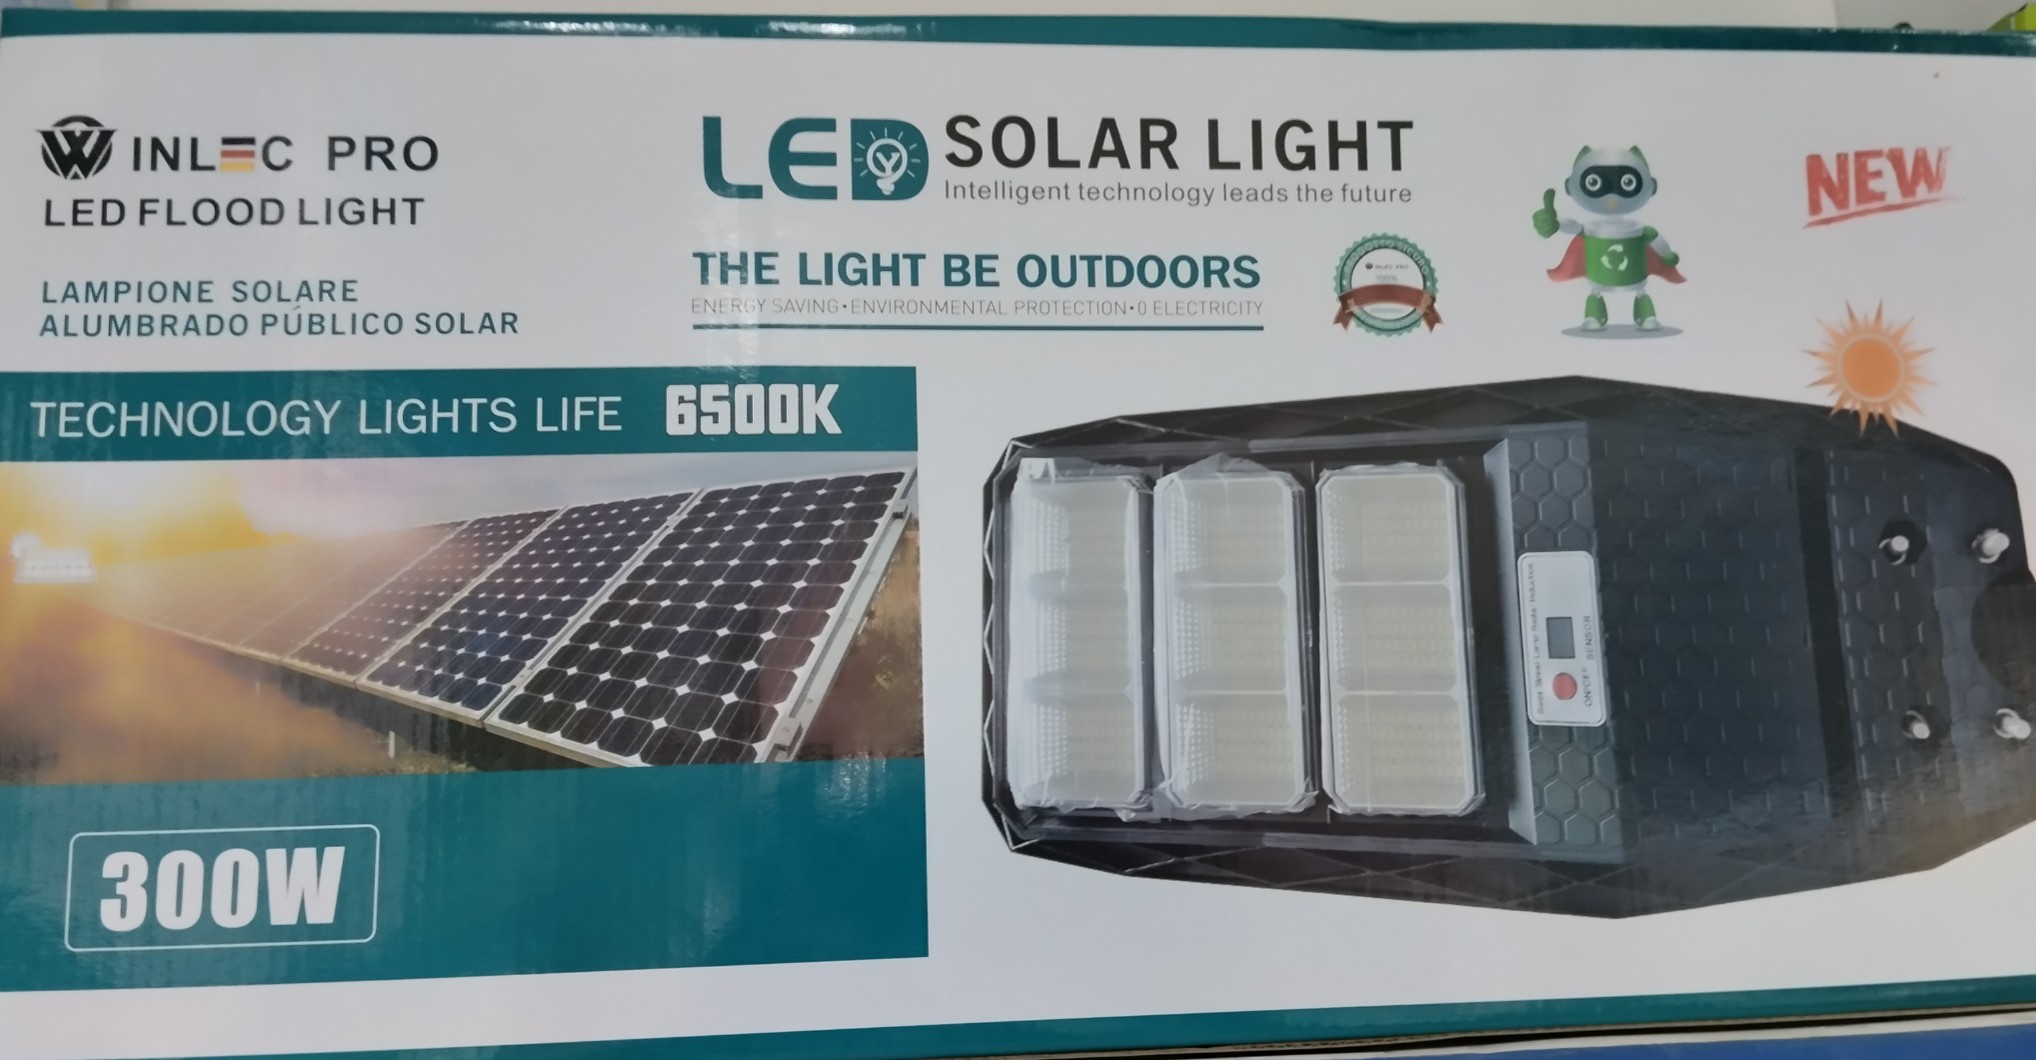 herramientas, jardines y exterior - Lámpara solares de 300watt. 0